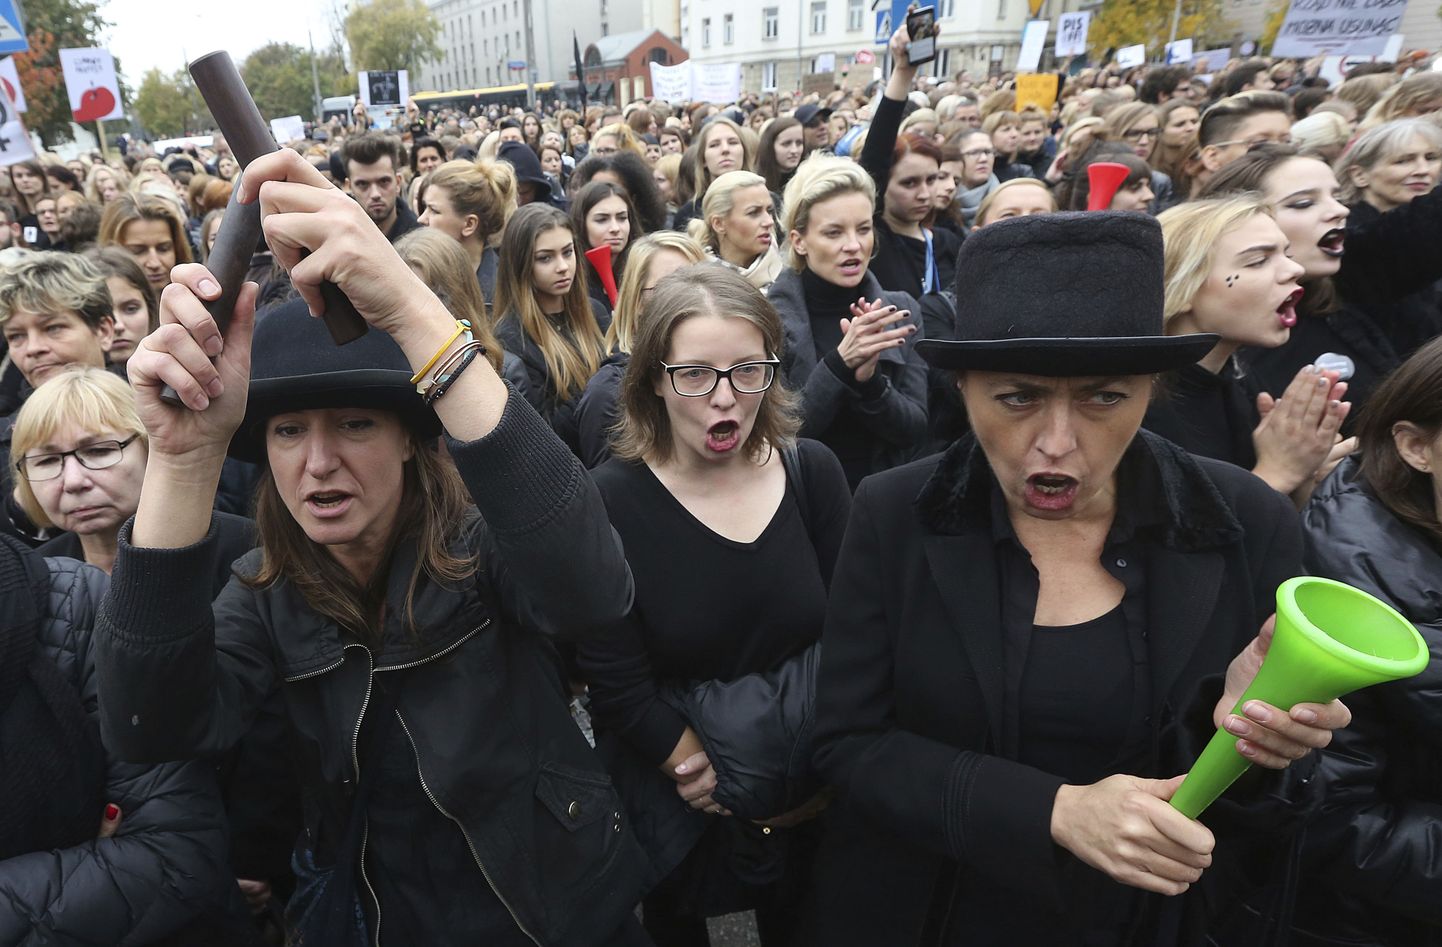 Poola naised tulid täna tänavatele, et väljendada oma vastuseisu võimalikule seadusemuudatusele, mis keelustaks abordi. Et protesti märgiks kannavad meeleavaldajad musti rõivaid, on sotsiaalmeedias selle tähiseks saanud #blackprotest.